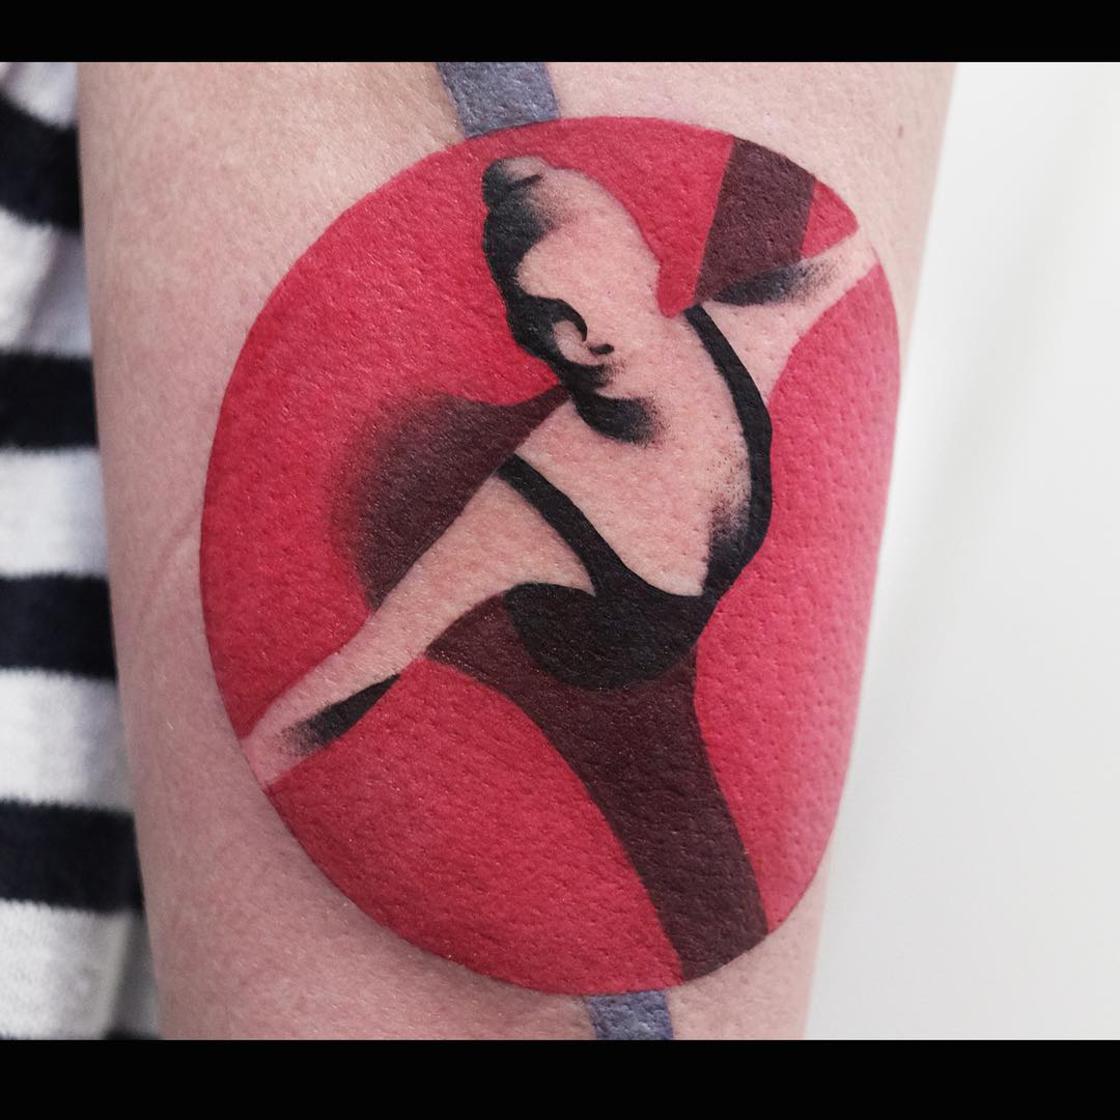 conceptuele tattoos voor mannen - aleksy marcinow